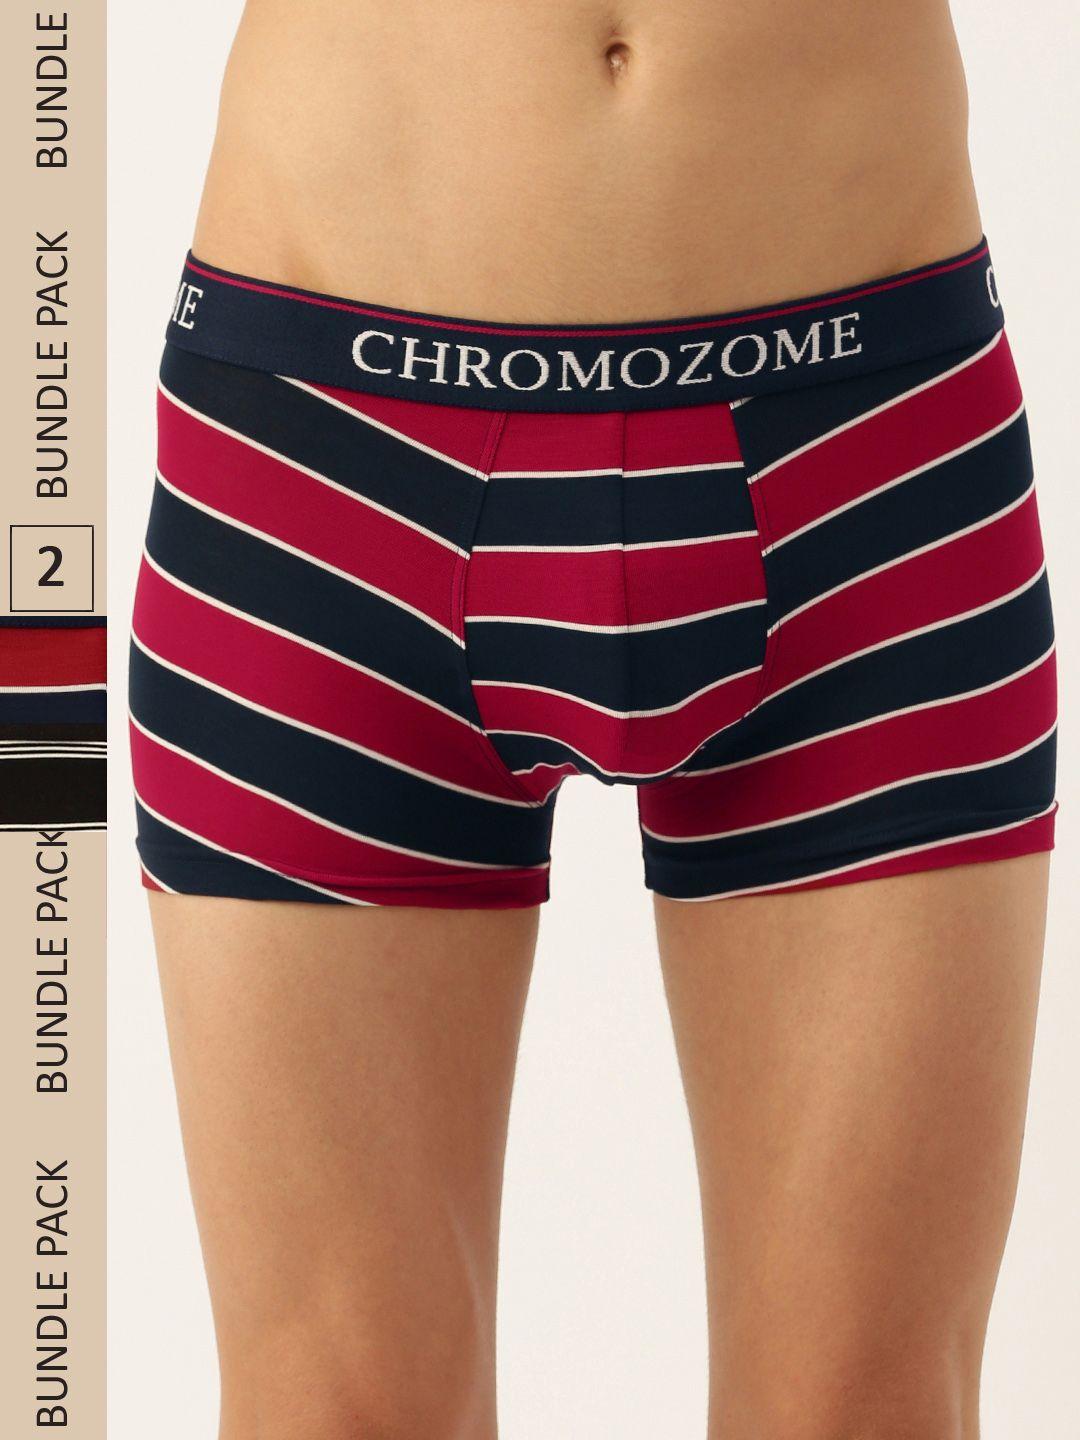 chromozome men pack of 2 ultra-premium striped trunks 8902733643665